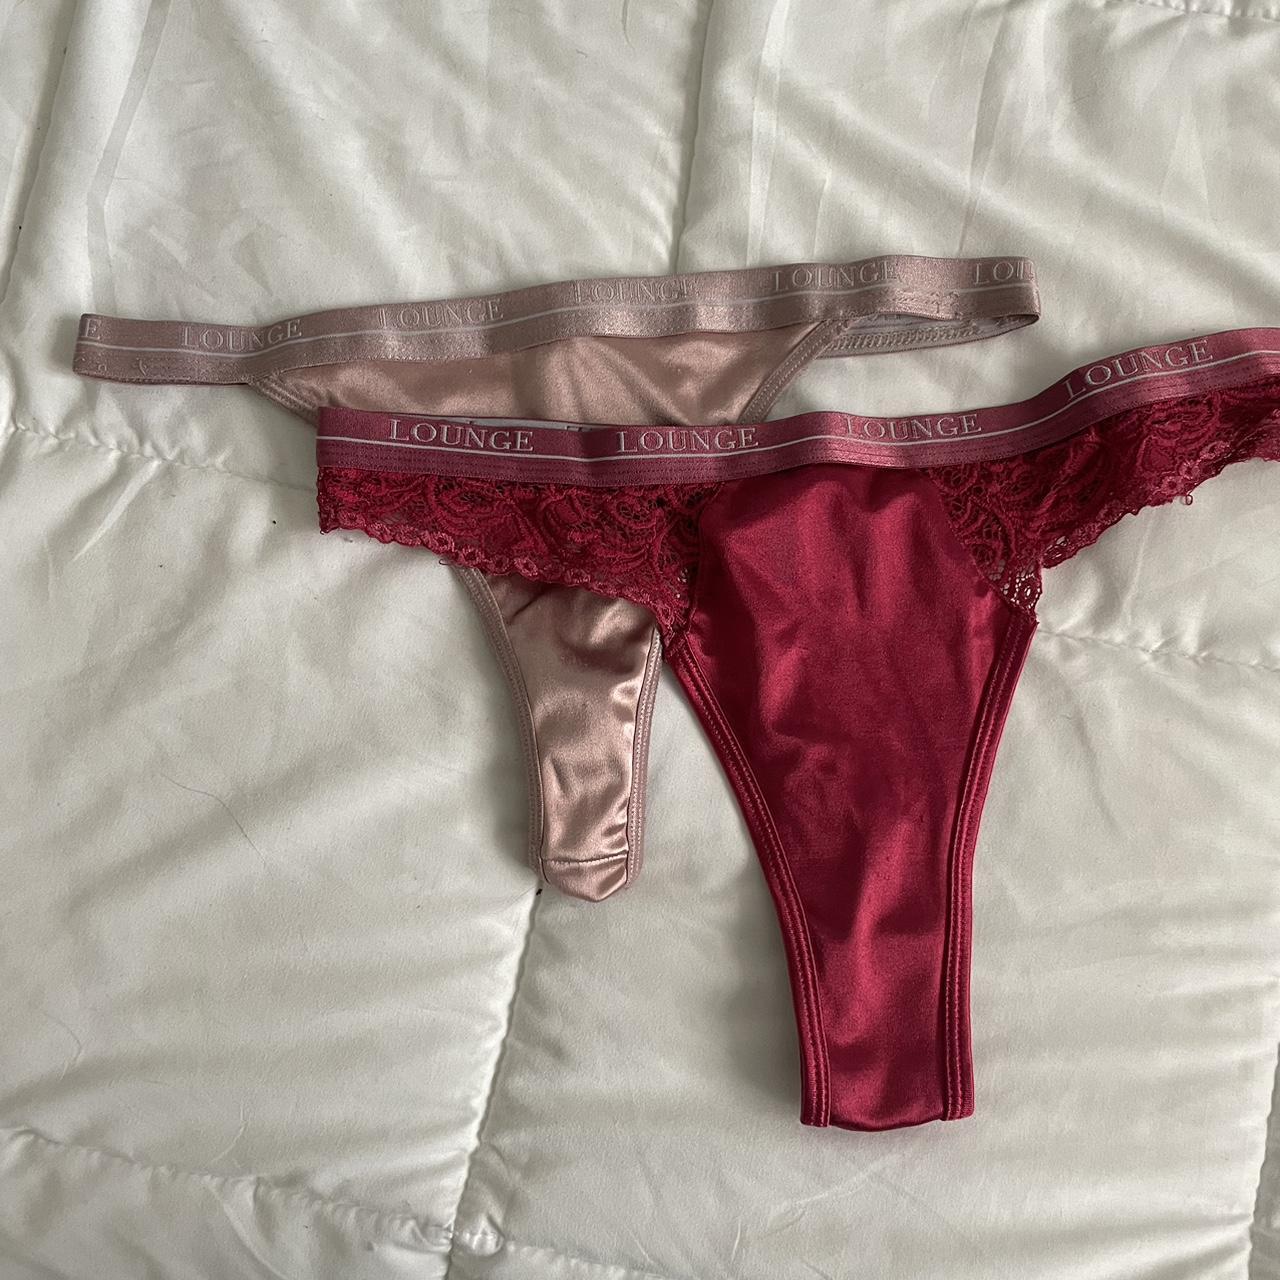 used panties